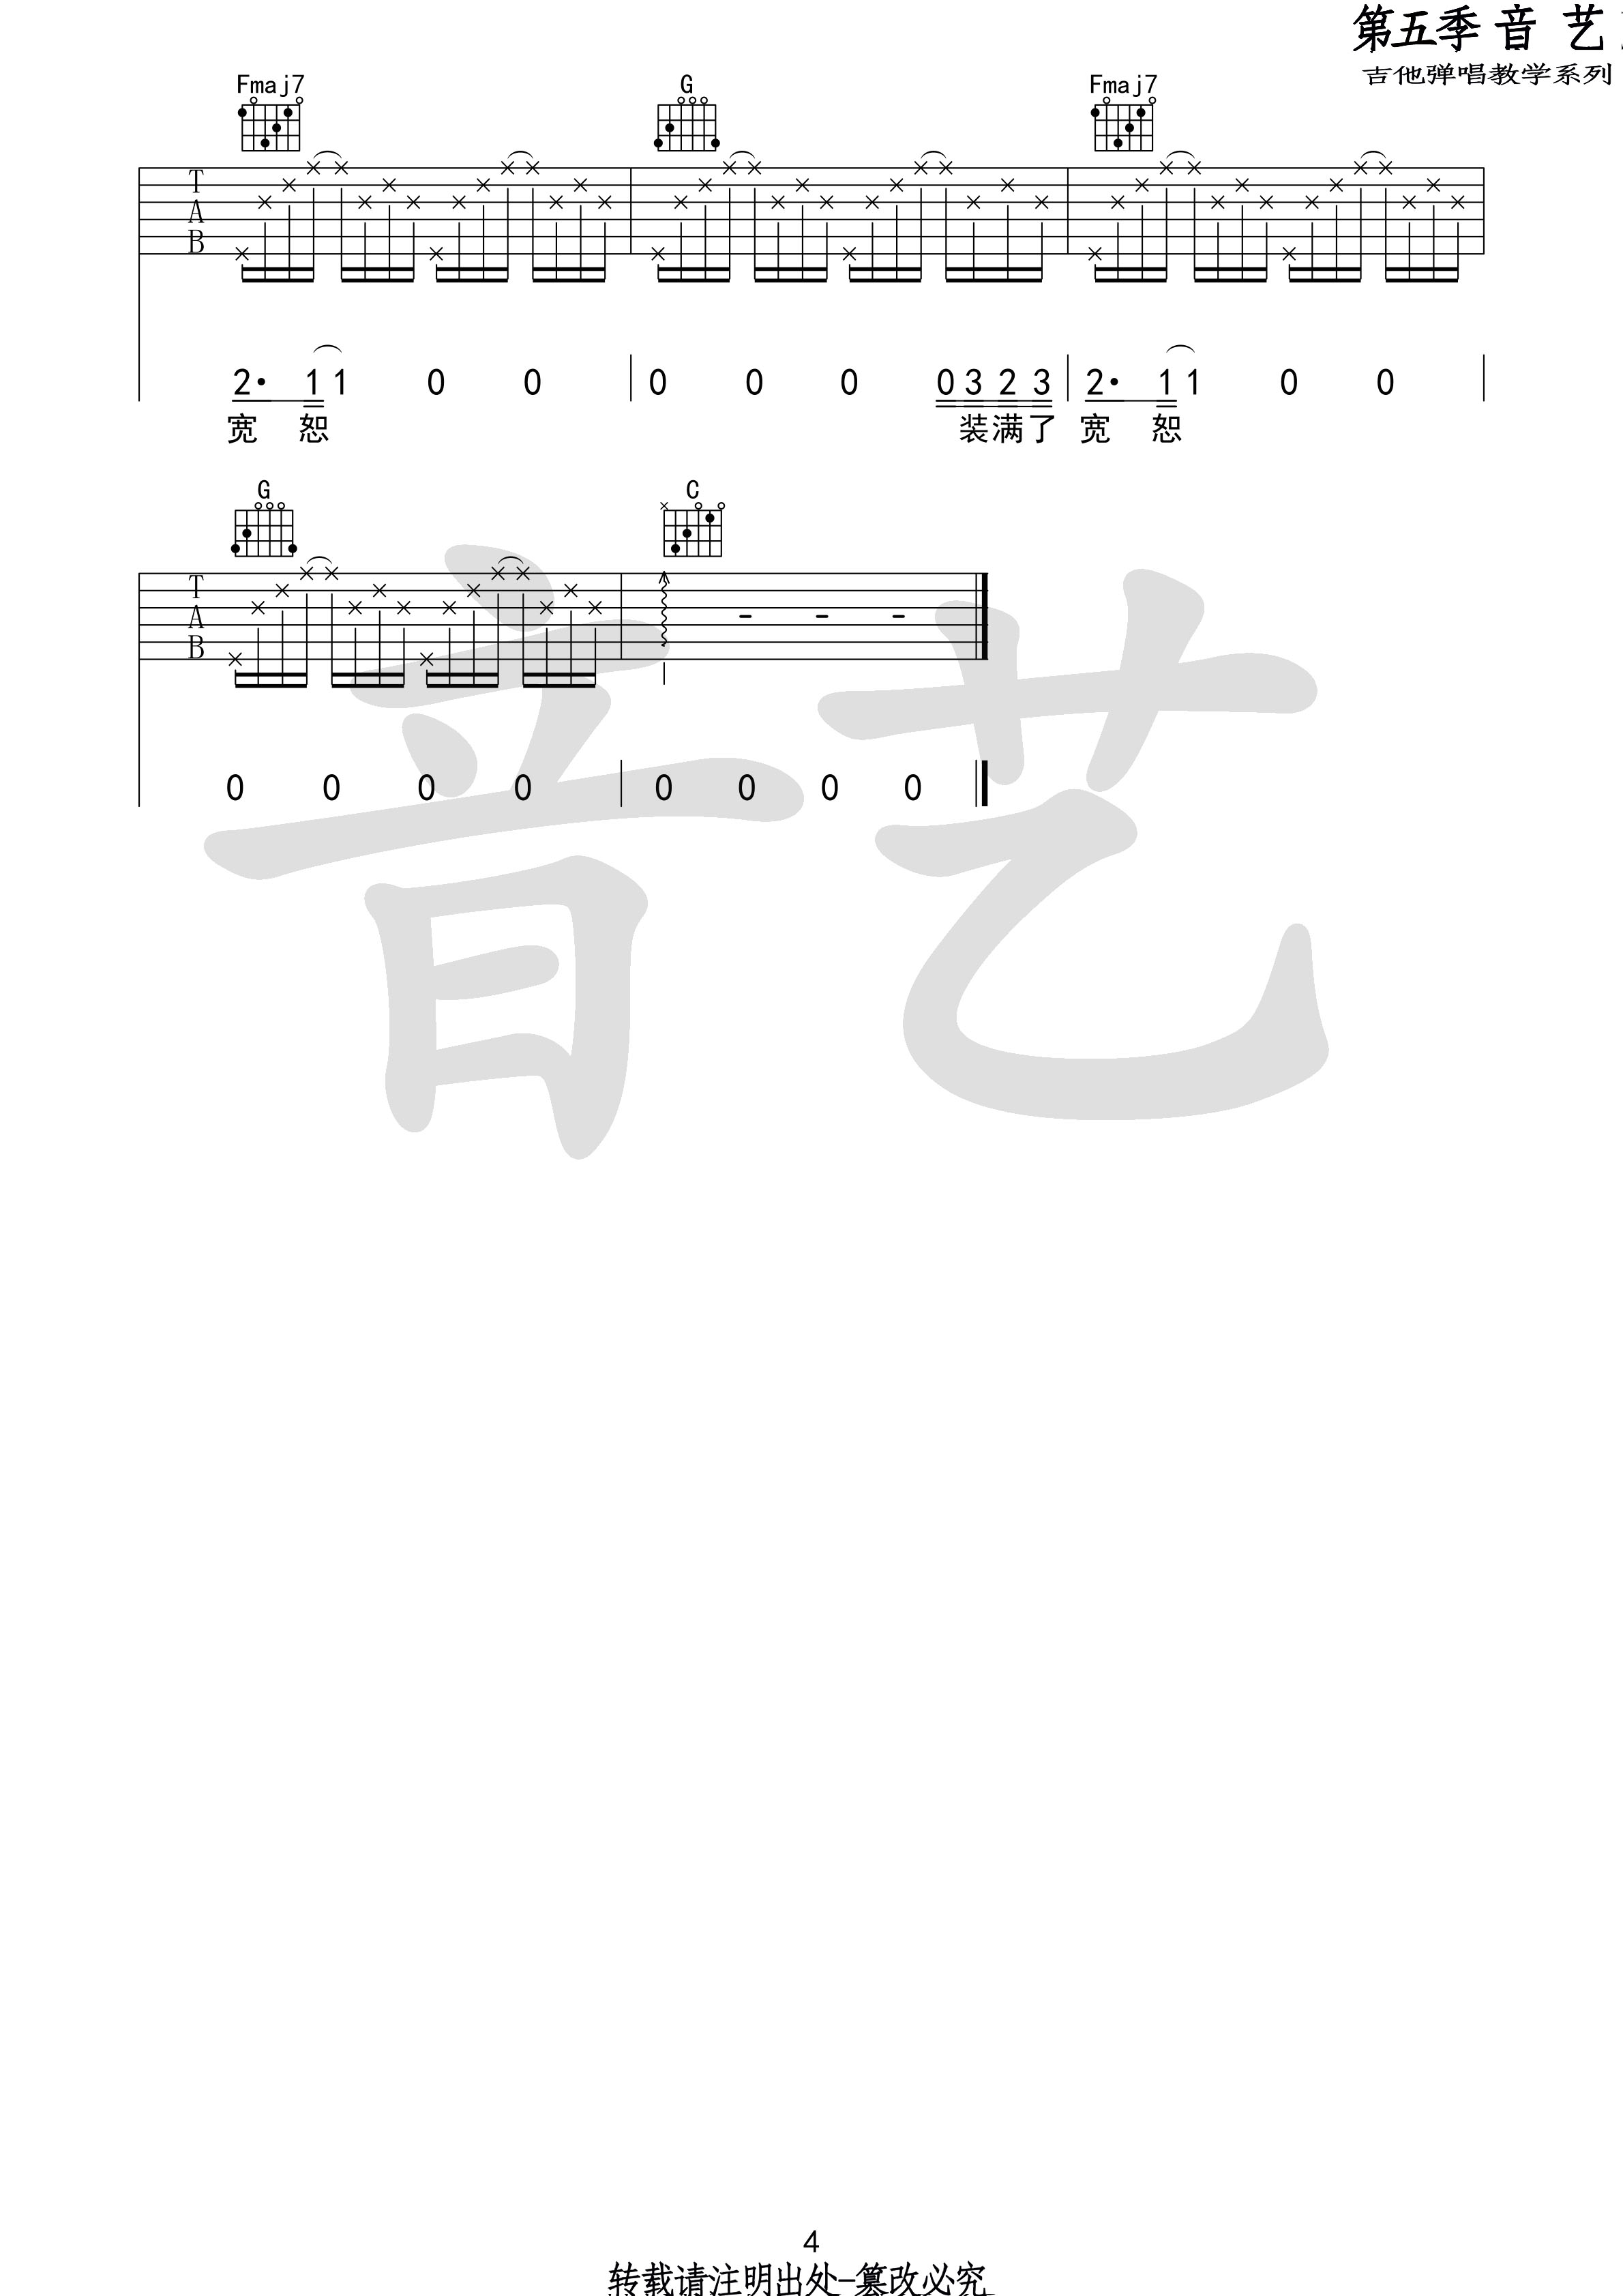 小屋吉他谱(图片谱,弹唱,民谣)_赵雷(雷子)_小屋4 第五期 第二十一集.jpg